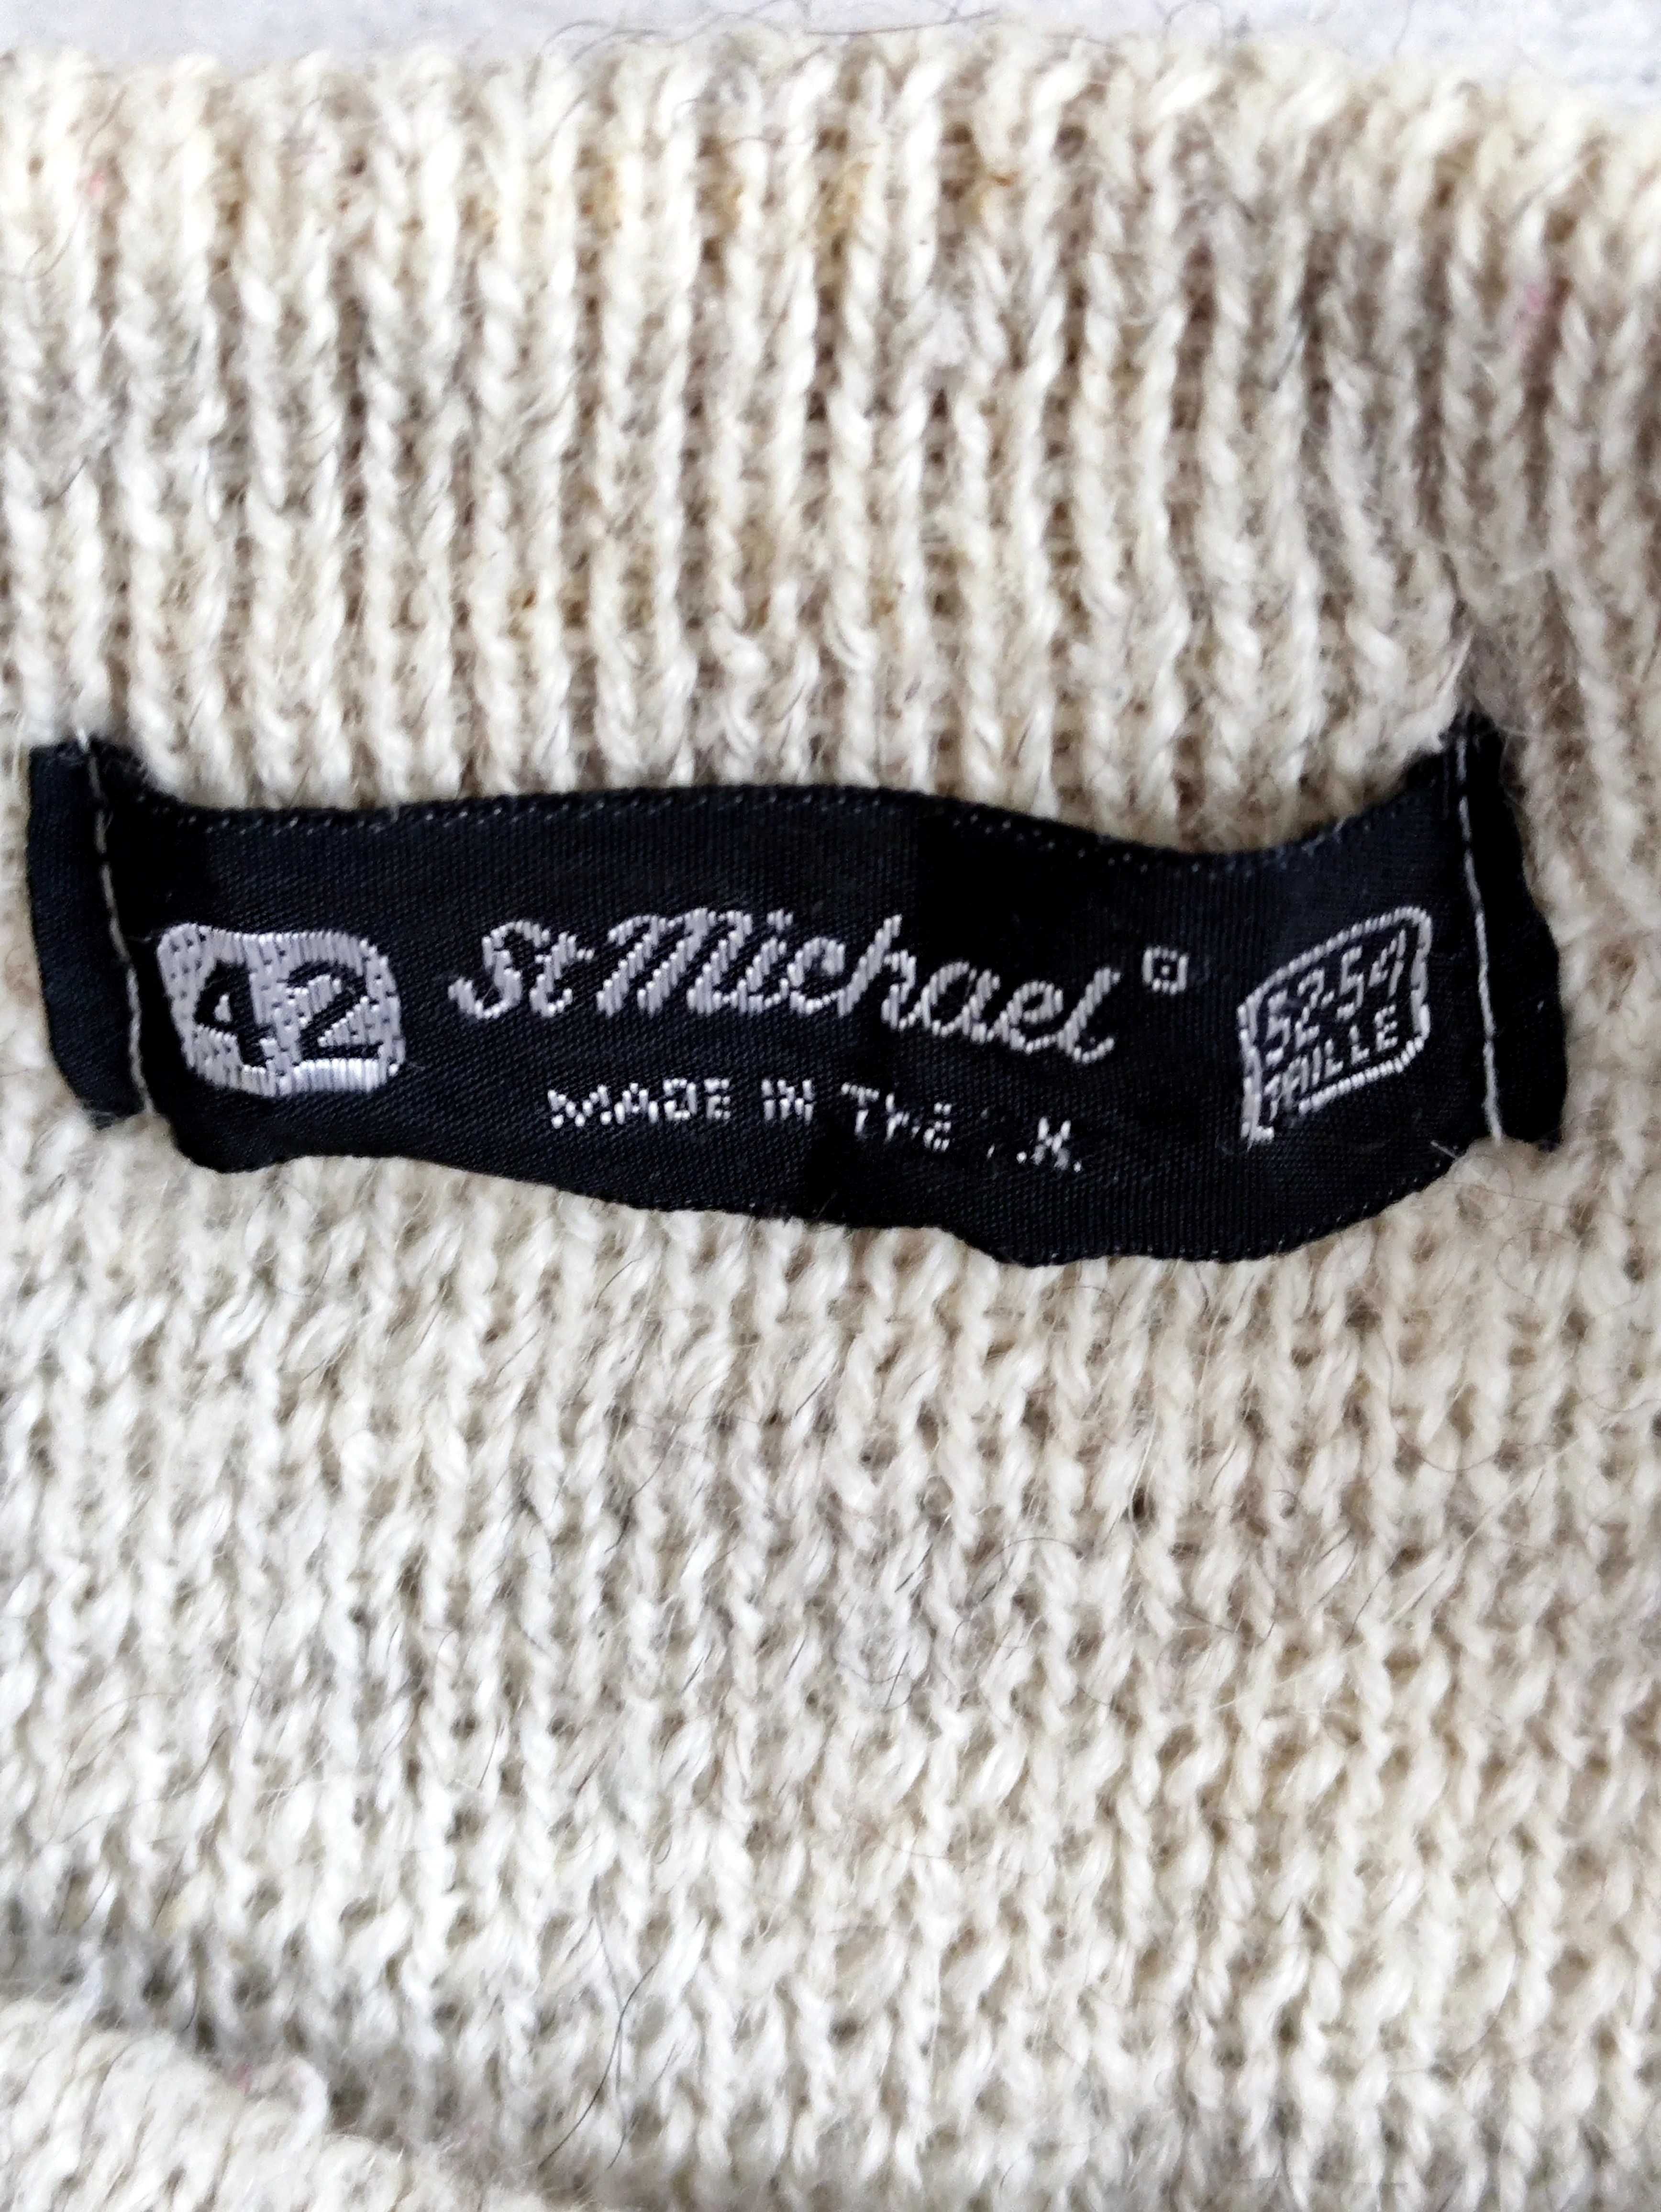 Sweter 90% wełny rozmiar 42 St miMichael